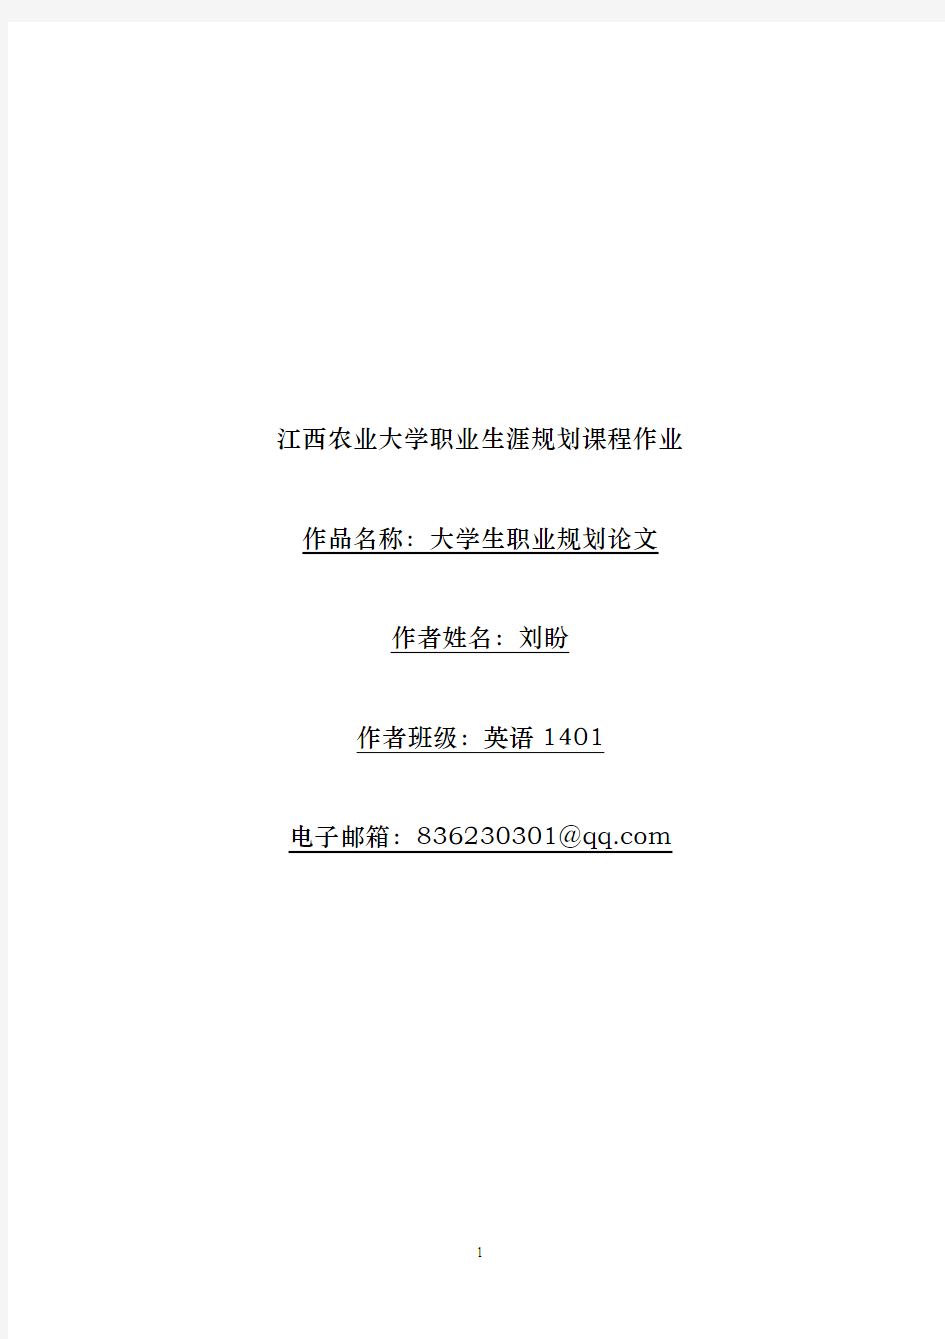 刘盼-江西农业大学职业生涯规划课程作业 (1)